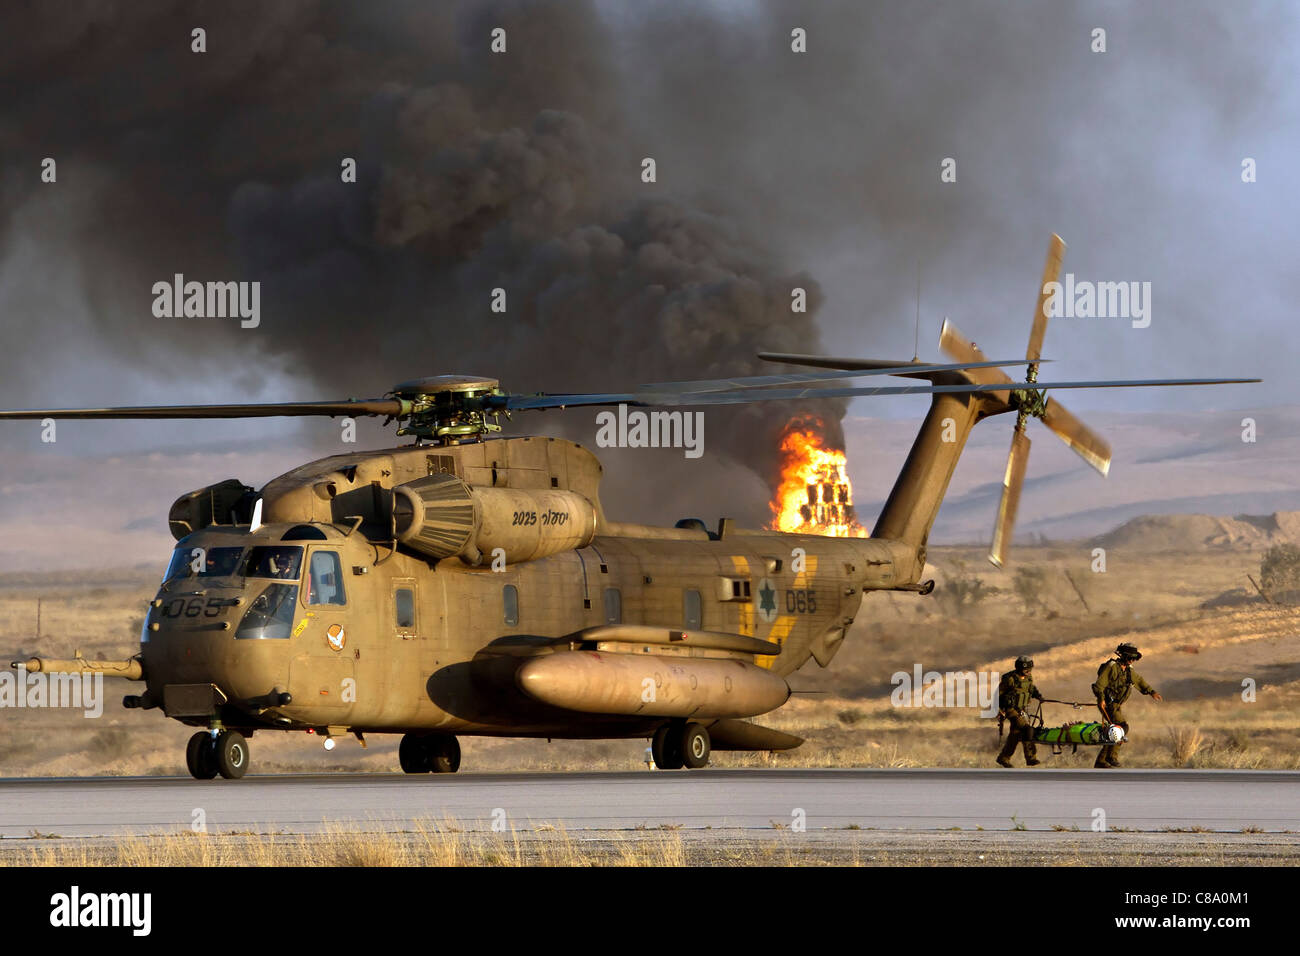 De l'air israélienne hélicoptère Sikorsky CH-53 pendant une opération de sauvetage Banque D'Images